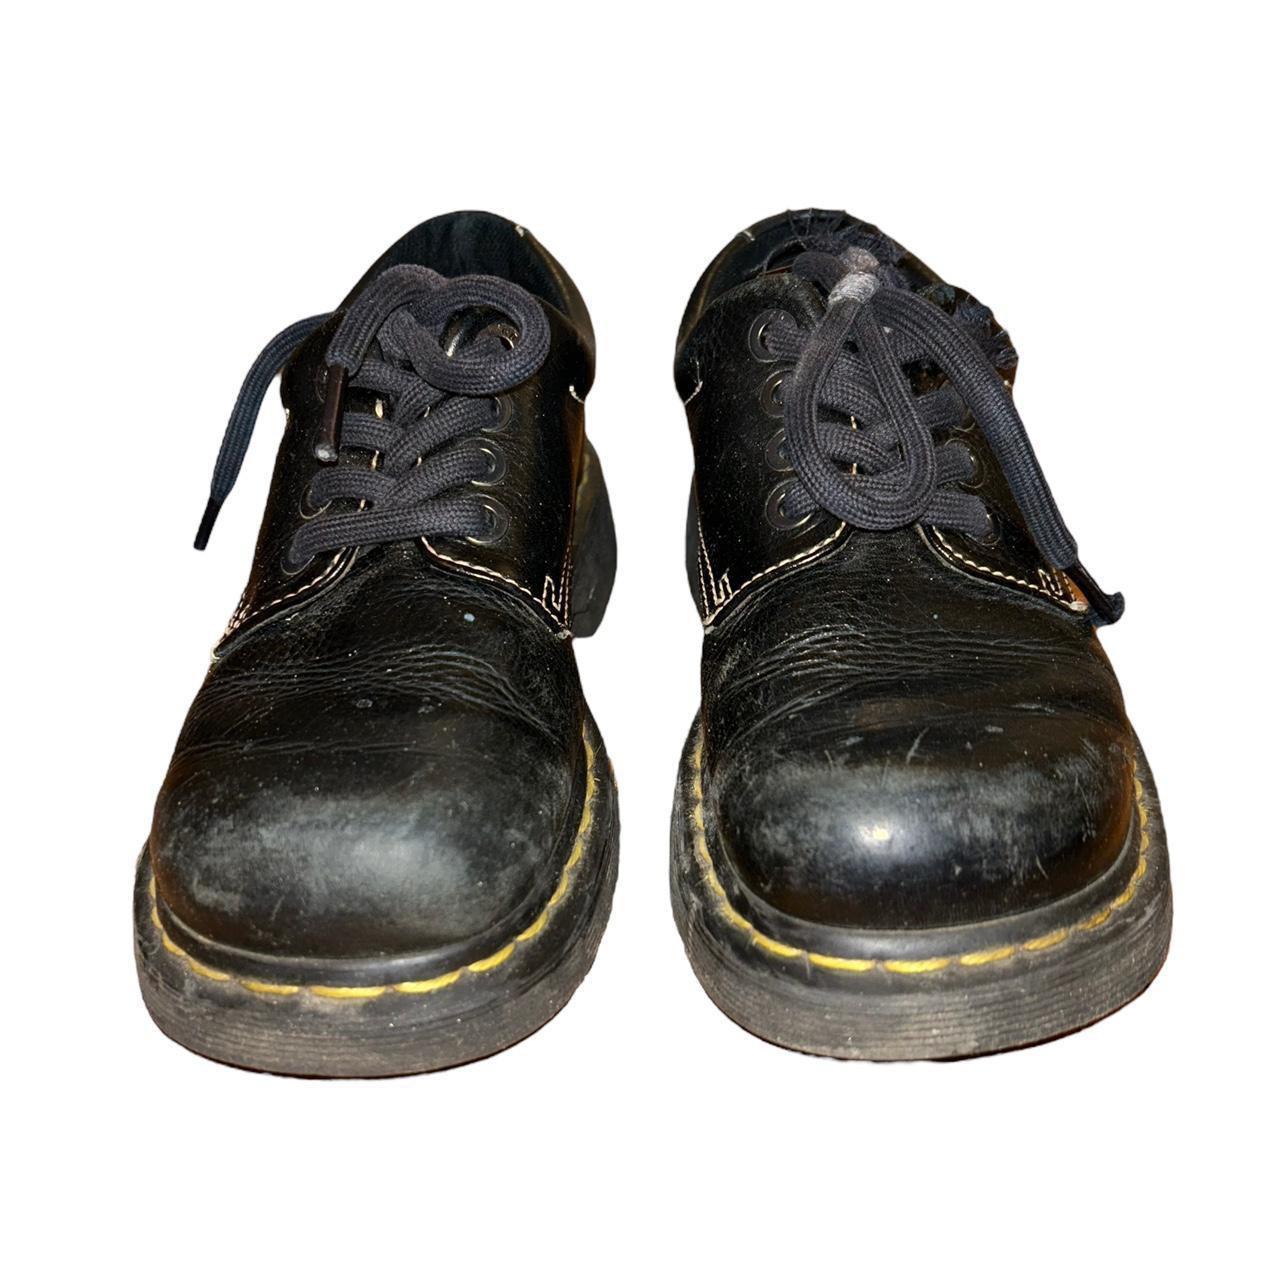 Vintage doc marten black platform shoes Laces are a... - Depop